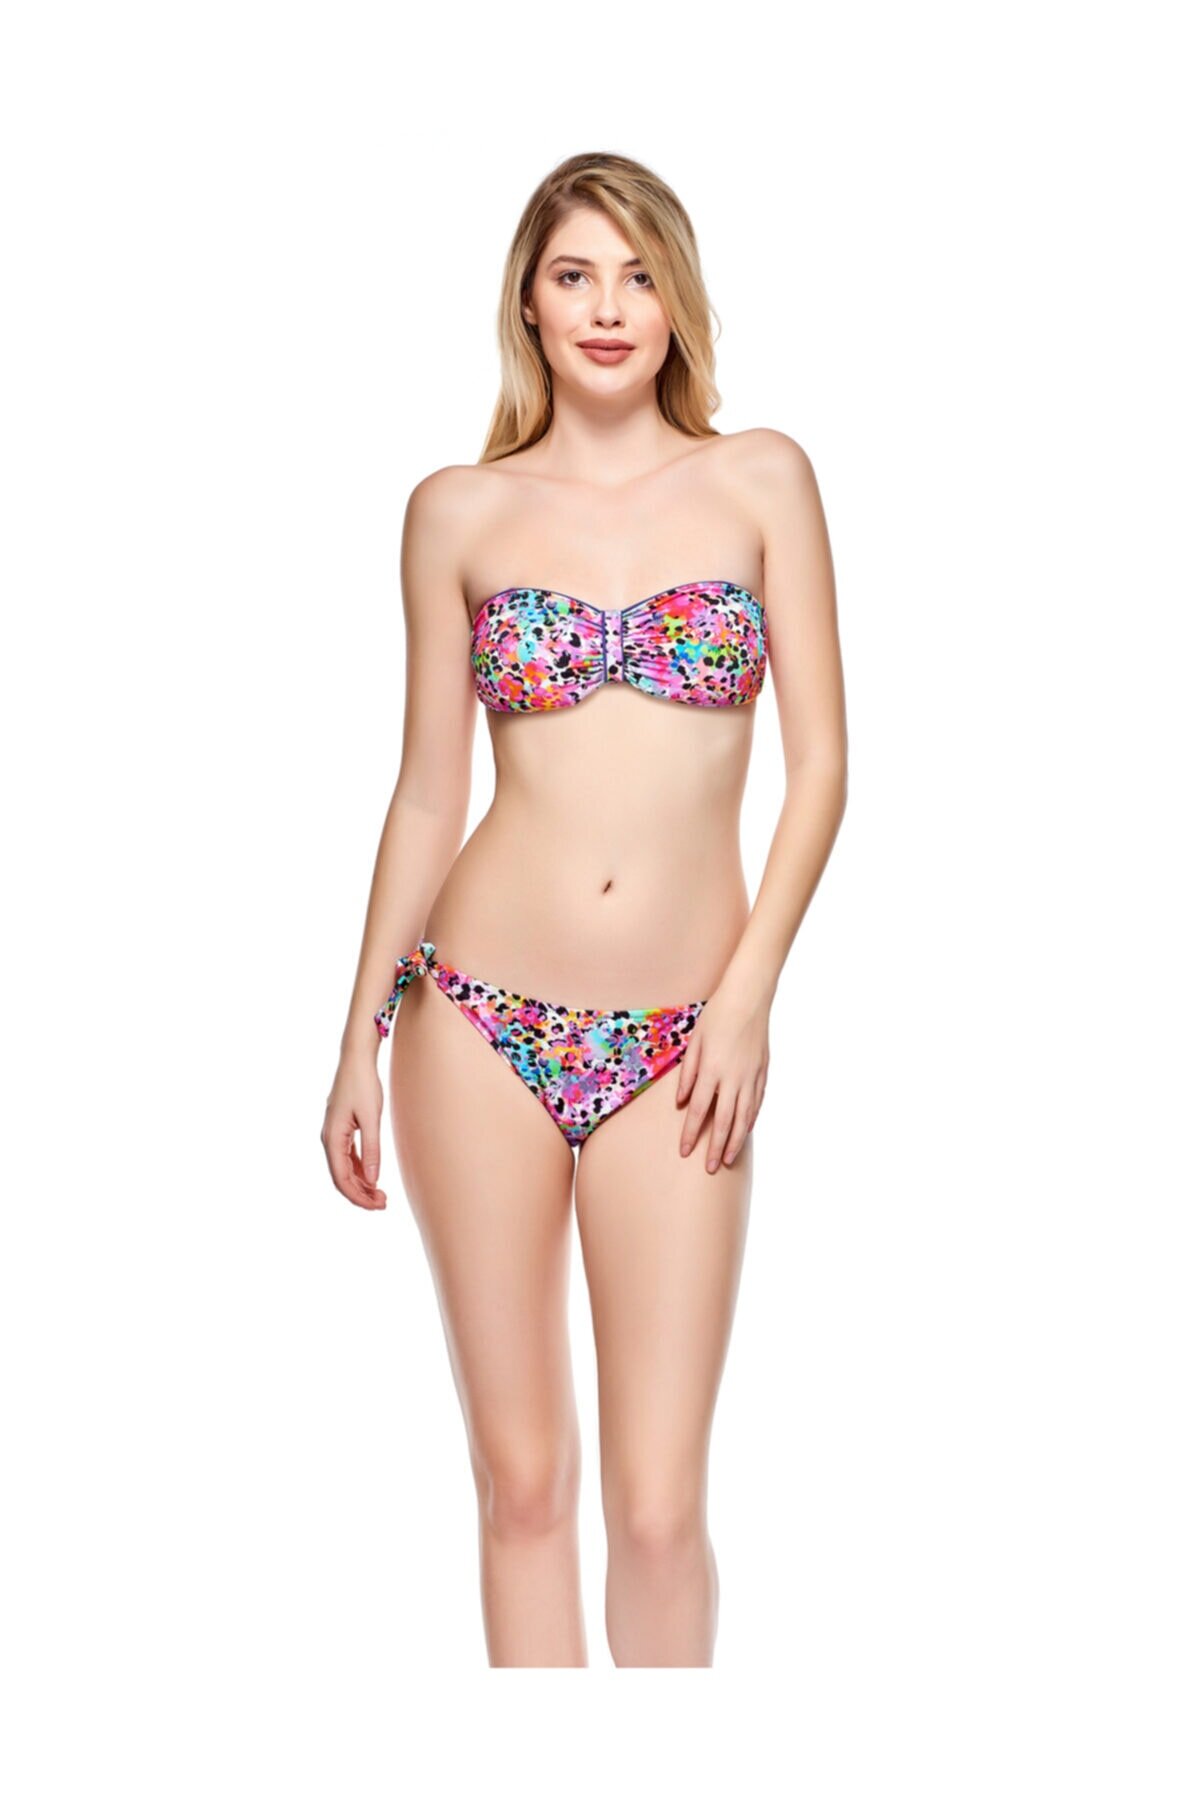 Mor Straplez Renkli Desenli Bikini Takımı